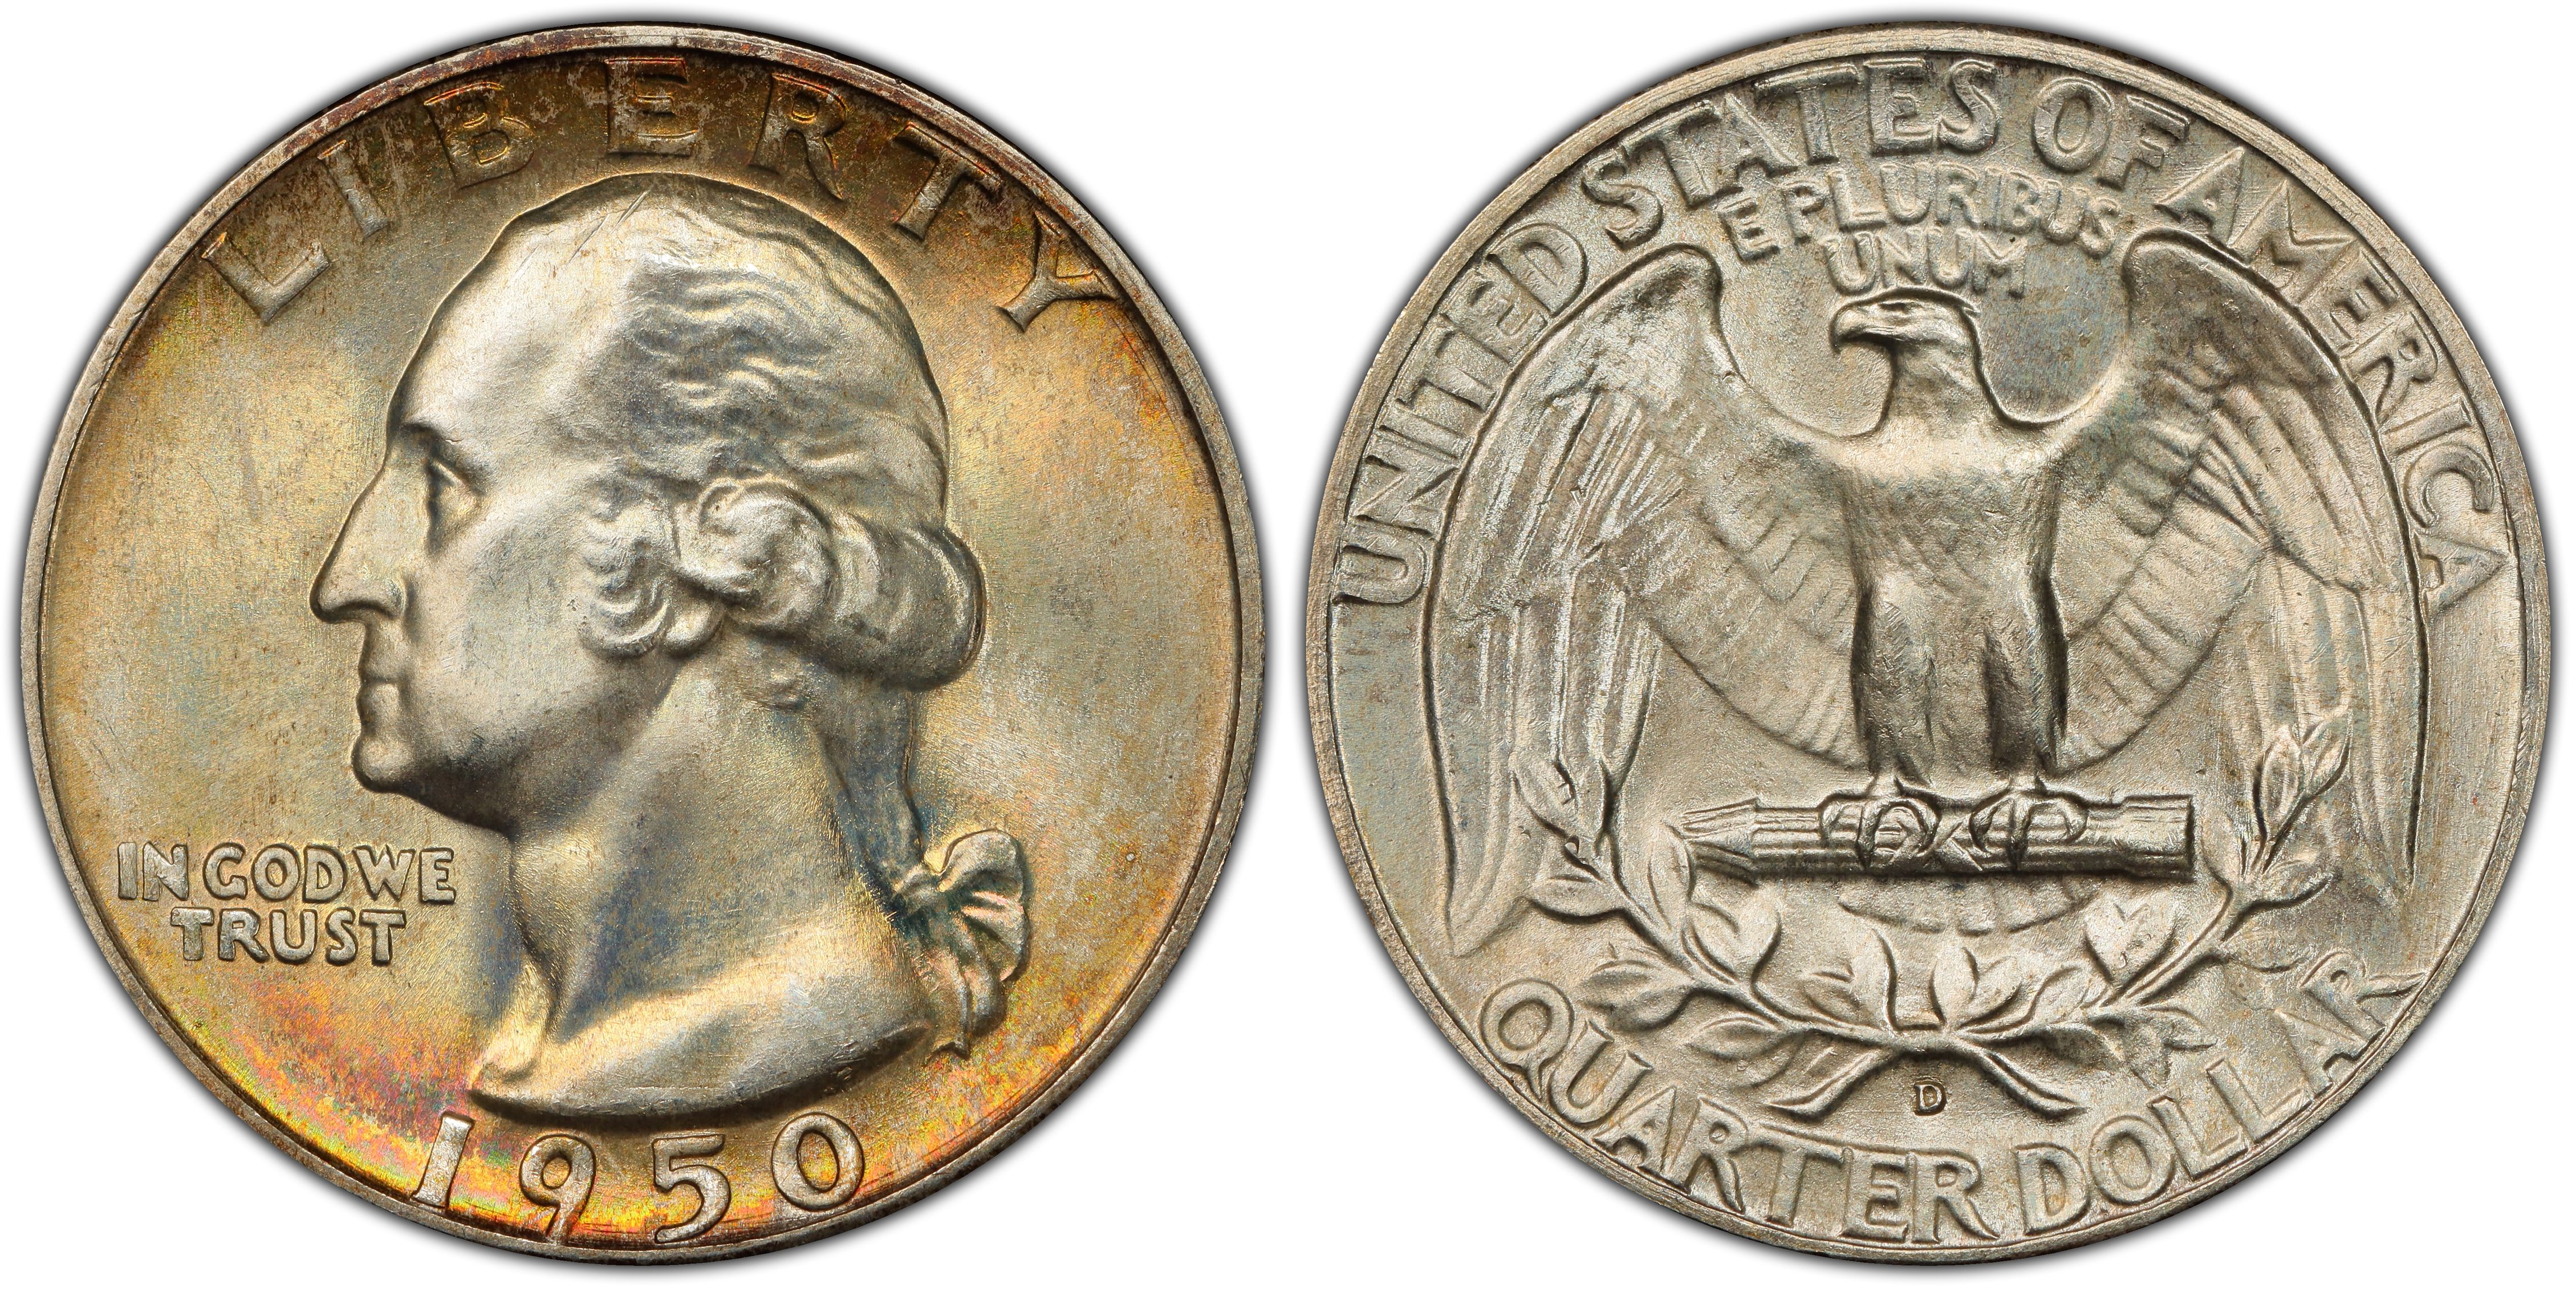 1950 D Washington Quarter AG About Good 90% Silver 25c US Coin Collectible 